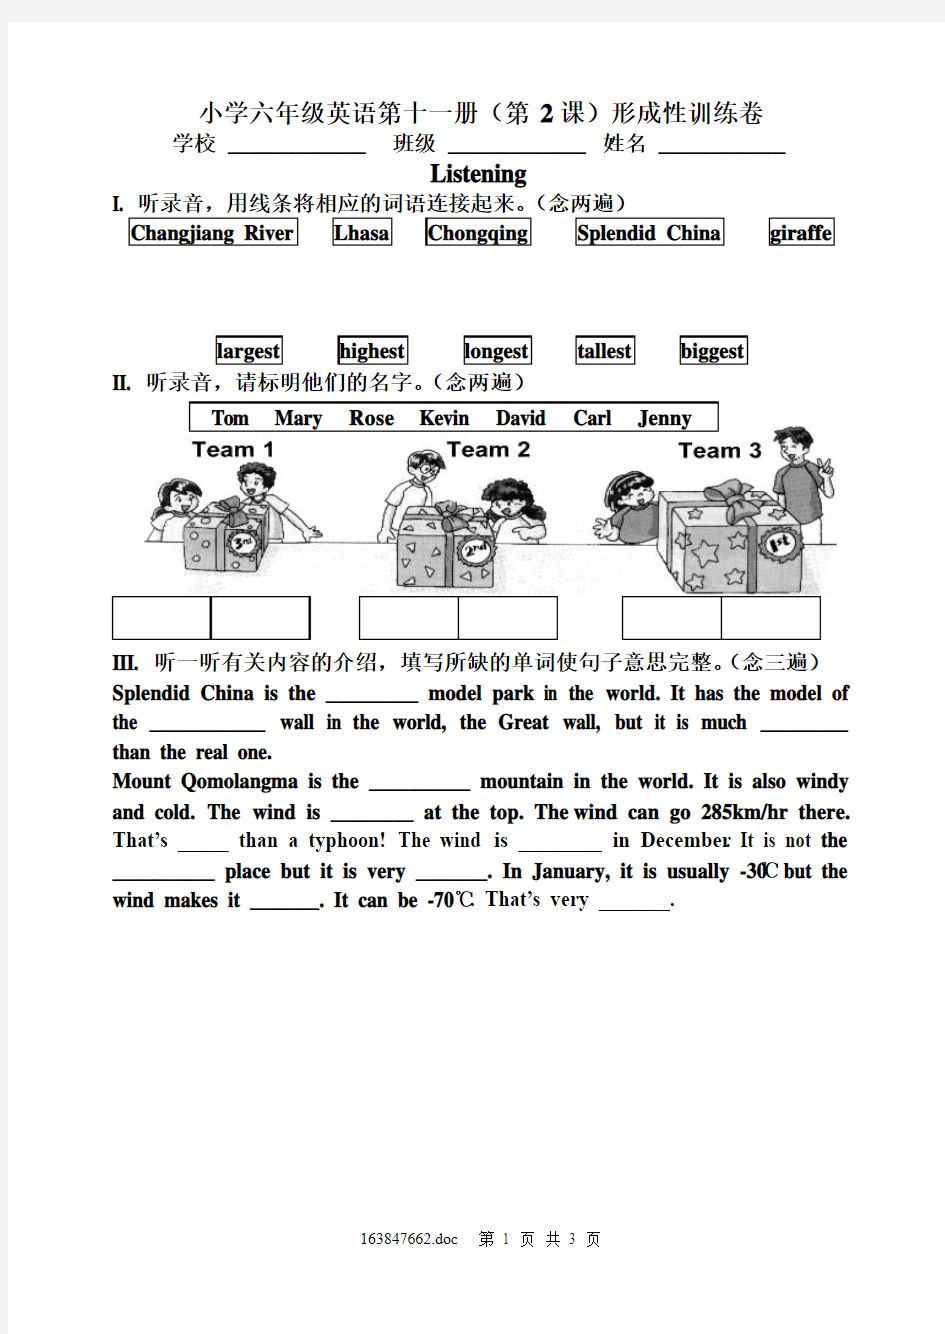 小学六年级英语第十一册(第2课)形成性训练卷(06、9)